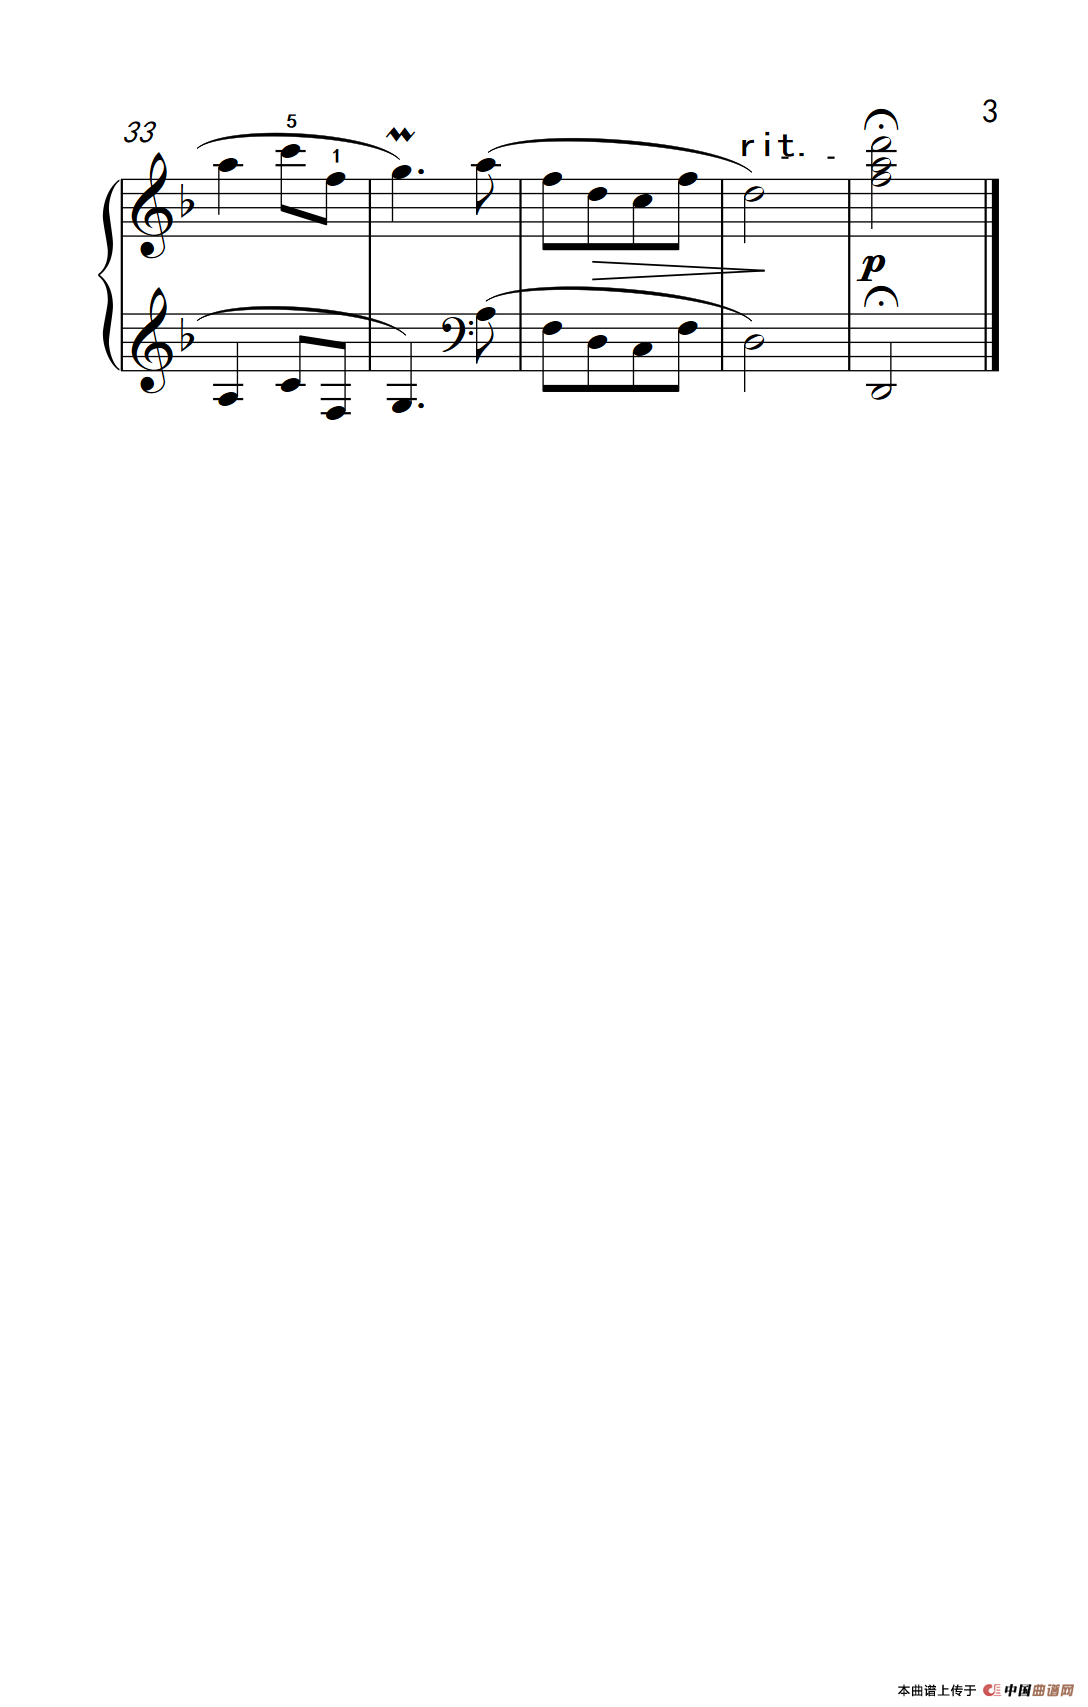 《牧马少年》钢琴曲谱图分享